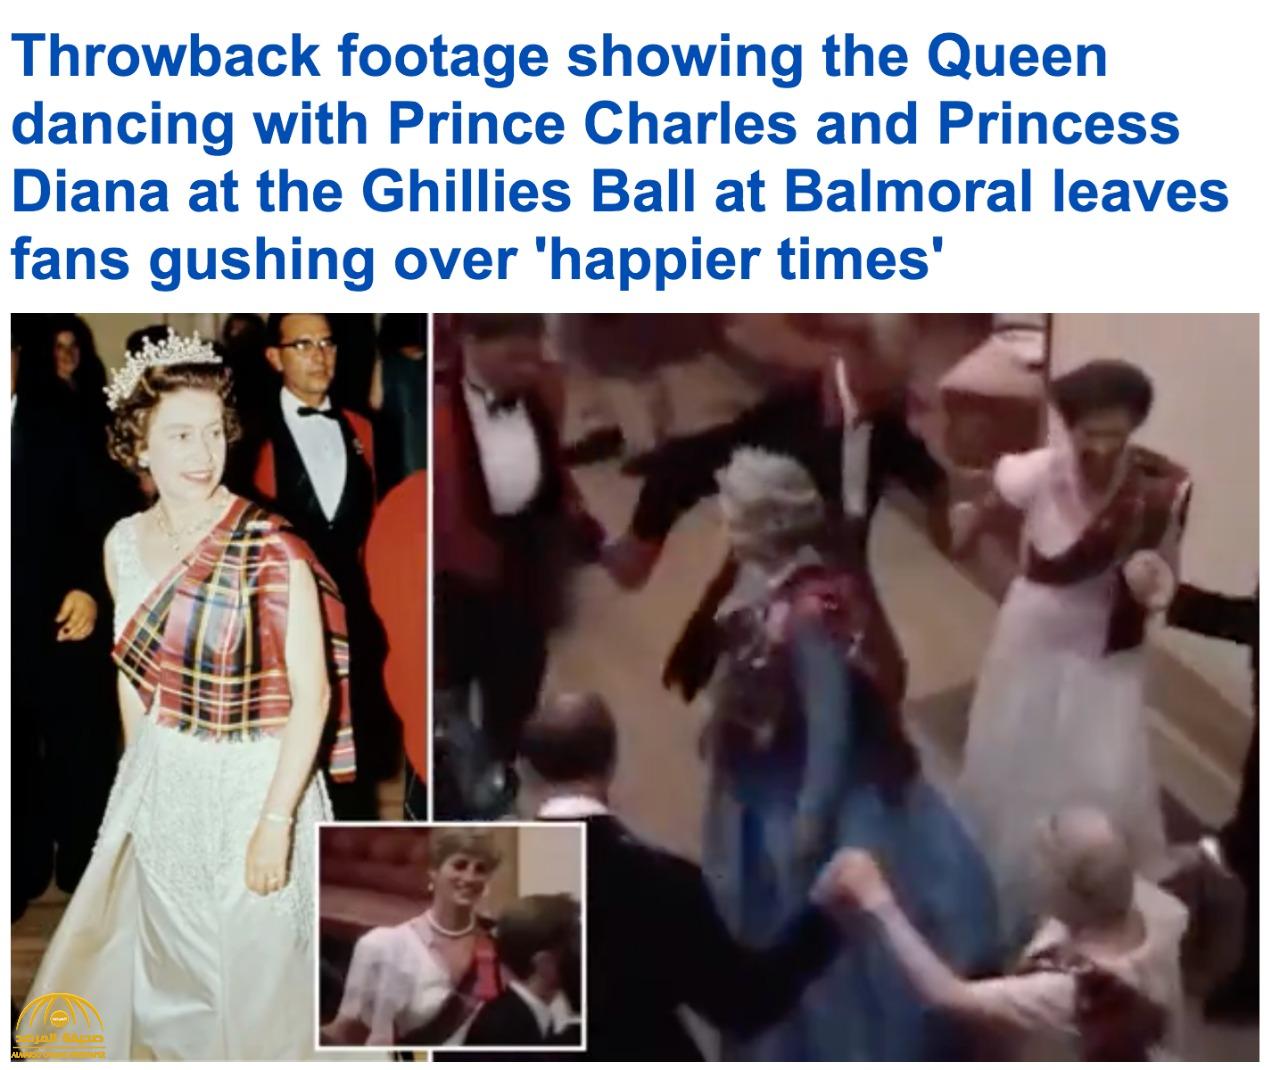 شاهد لأول مرة : فيديو تاريخي لملكة بريطانيا وهي ترقص في حفلة ملكية مع الأمير تشارلز والأميرة ديانا في اسكتلندا